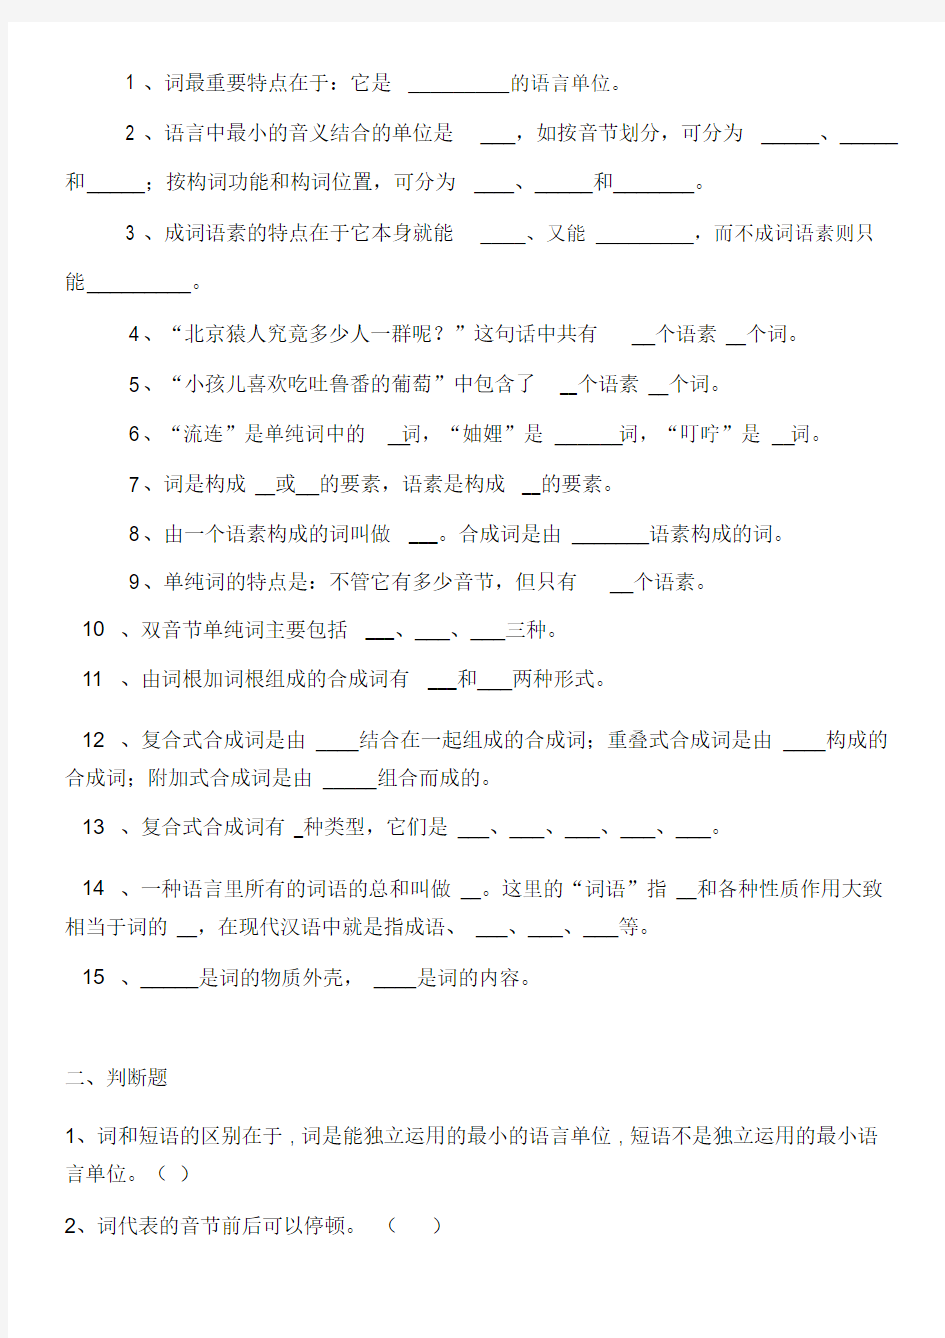 现代汉语词汇练习题(20201007193711).docx